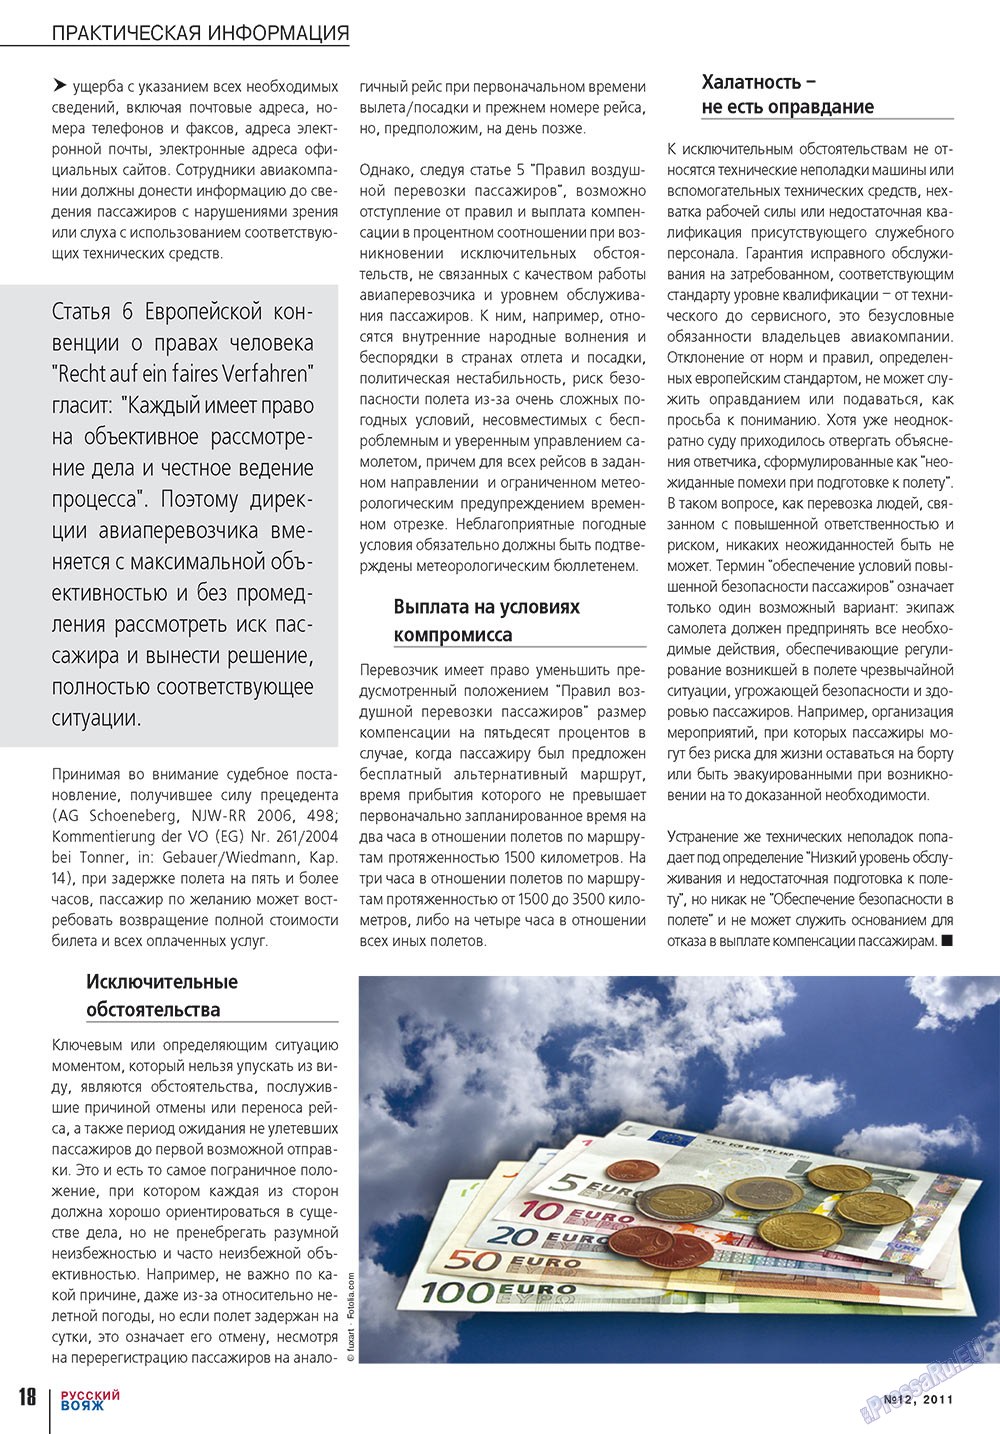 Русский вояж (журнал). 2011 год, номер 12, стр. 18